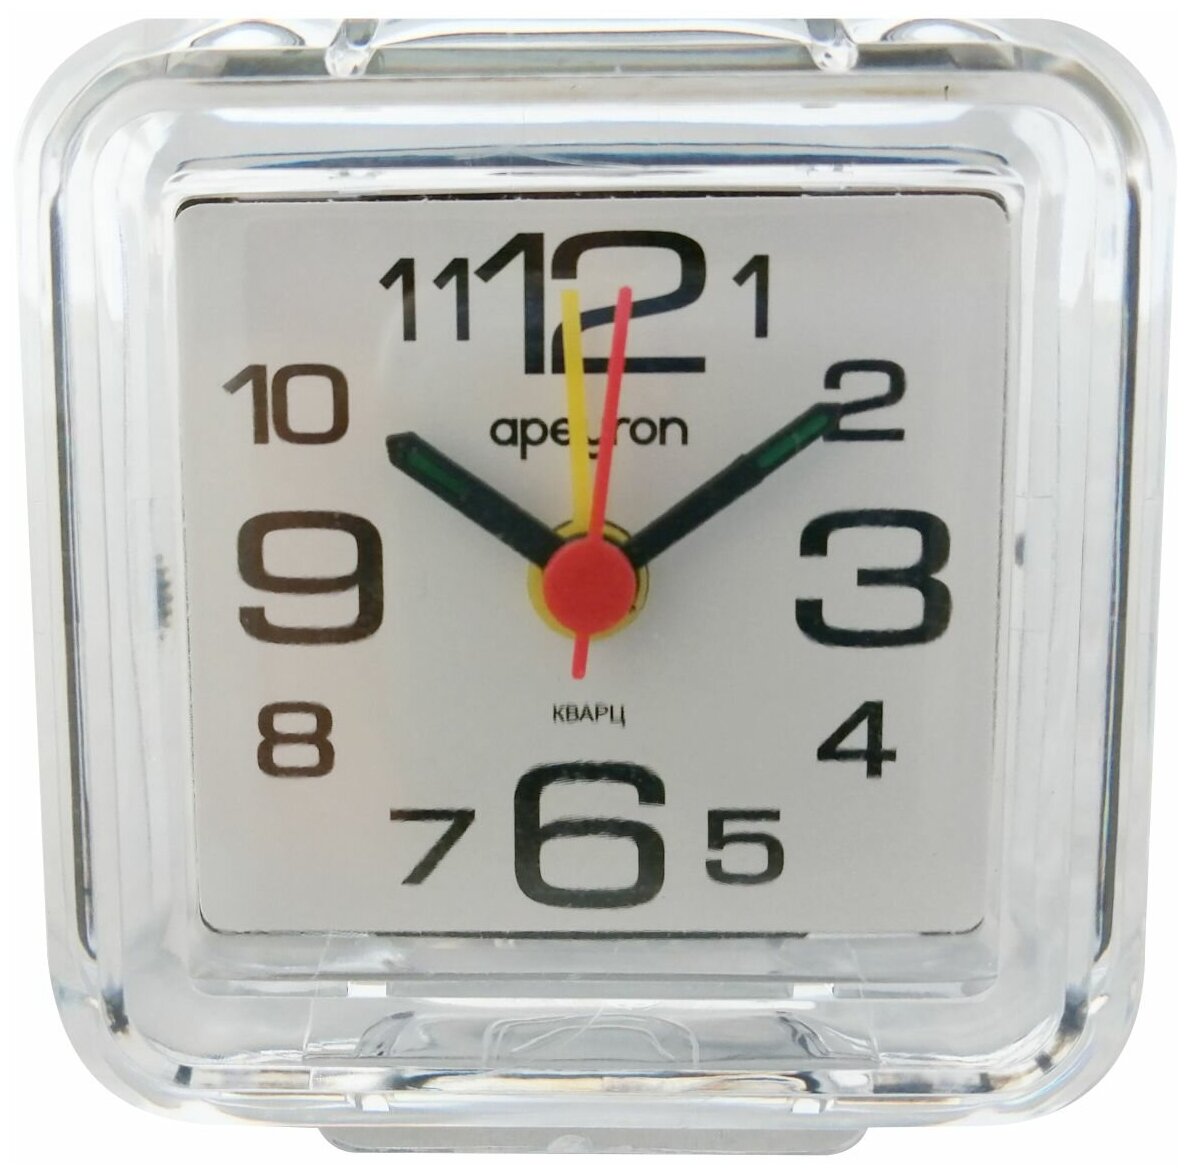 Будильник-часы Apeyron PLT20-001 в форме квадрата с корпусом и рассеивателем из качественного пластика. Лицевая сторона защищена пластиковым стеклом. На циферблате белого цвета расположены арабские цифры и три стрелки.